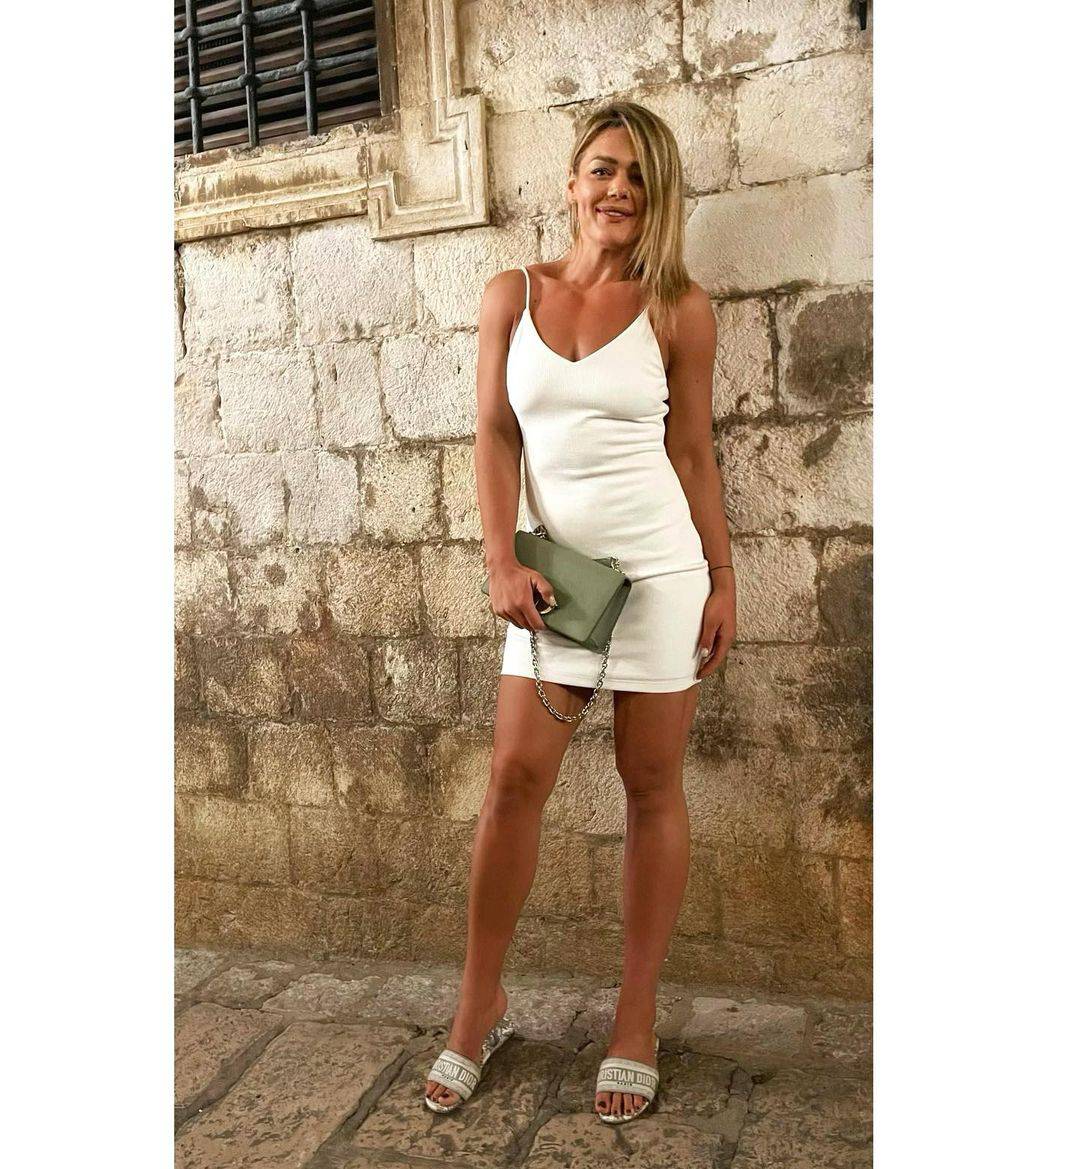 Sandra Perković fotkom s plaže u bikiniju zapalila Instagram, fanovi: 'Brončana ljepotica!'